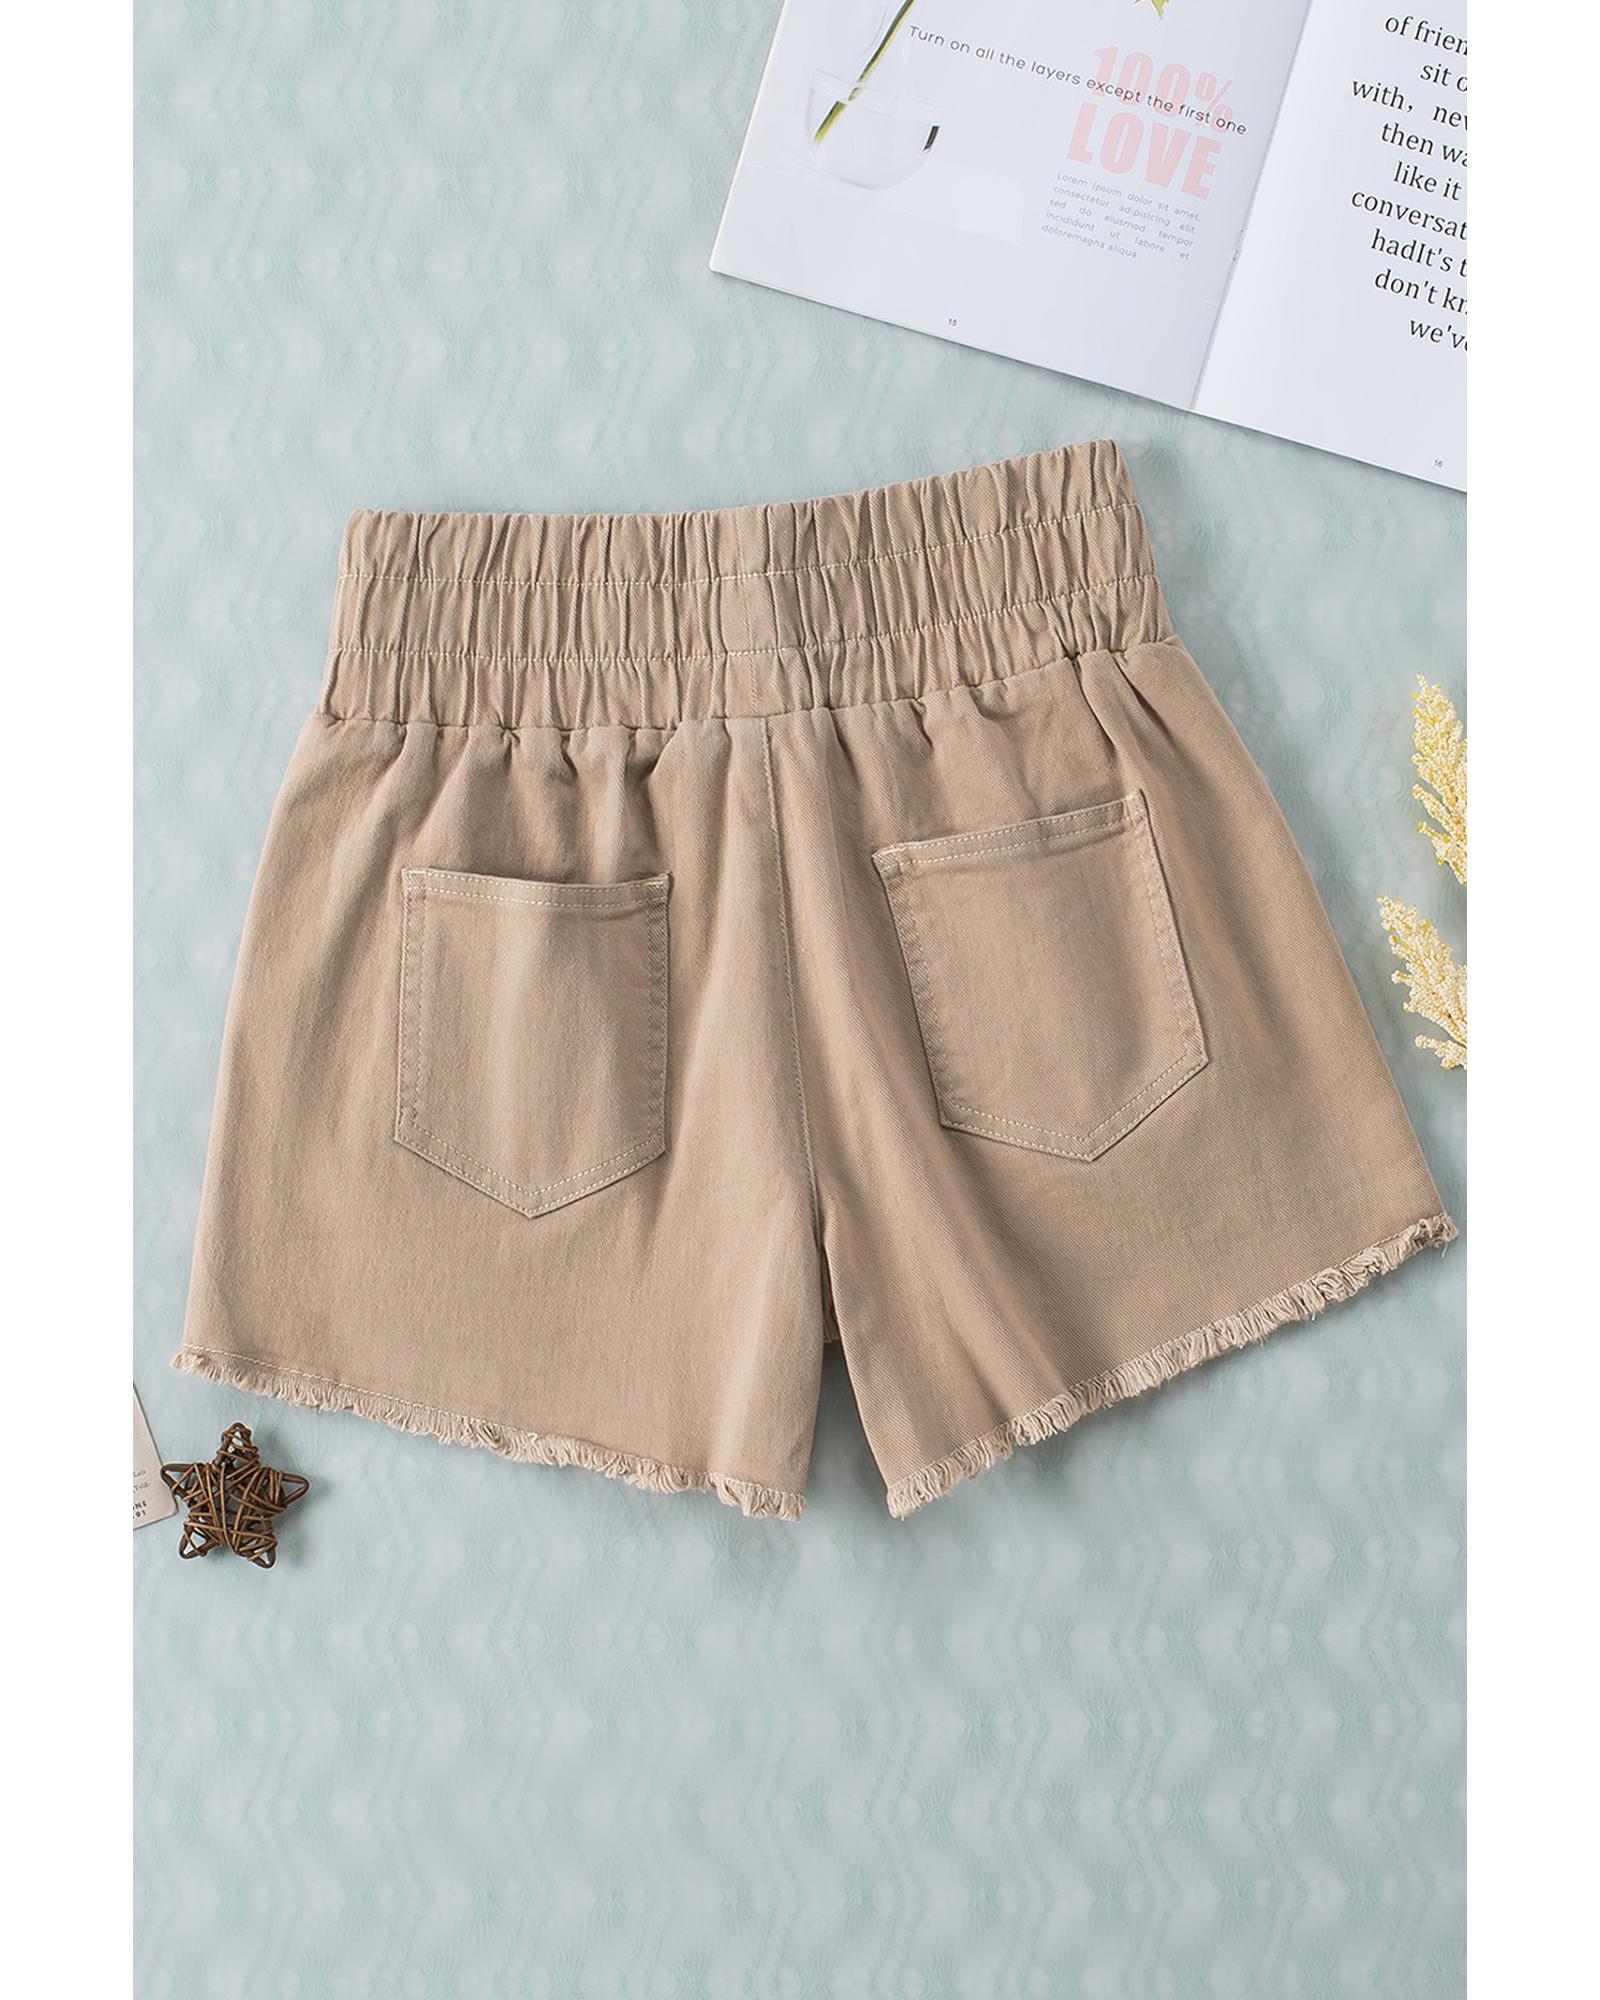 Smocked Elastic High Waist Shorts - 10 US